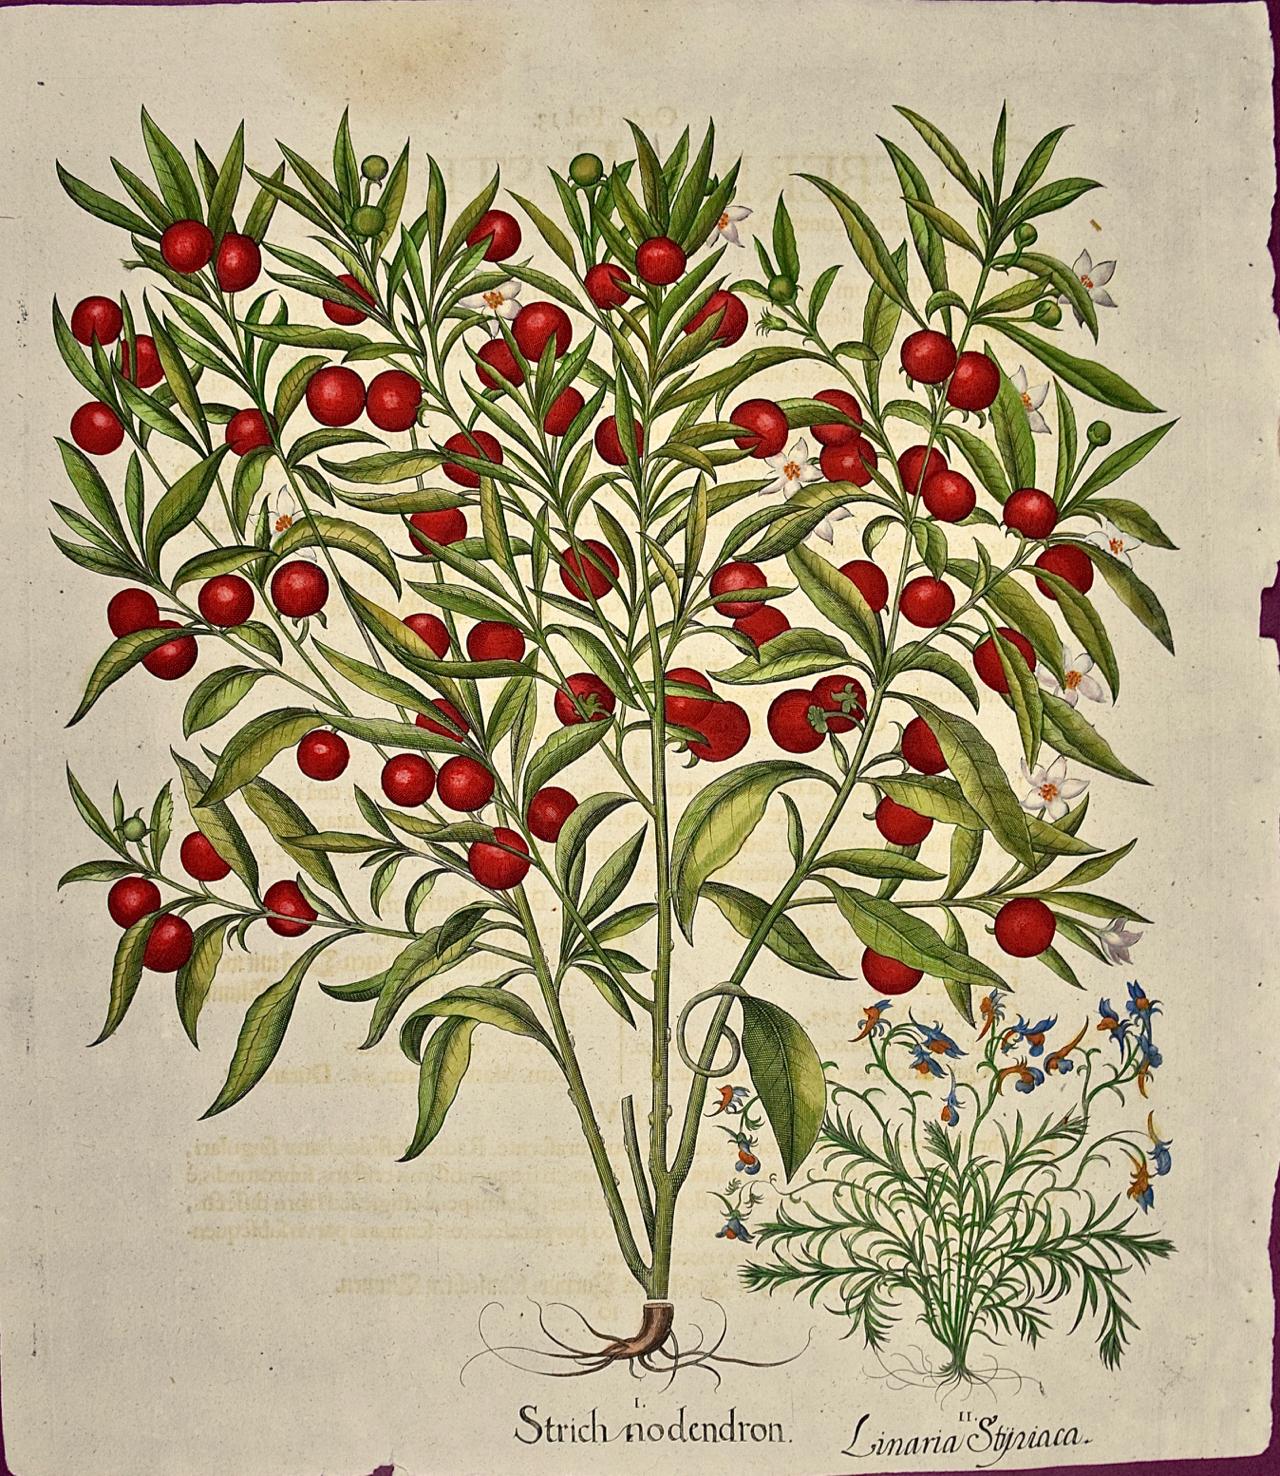 Basilius Besler Figurative Print - Flowering Jerusalem Cherry Plants: A Besler Hand-colored Botanical Engraving